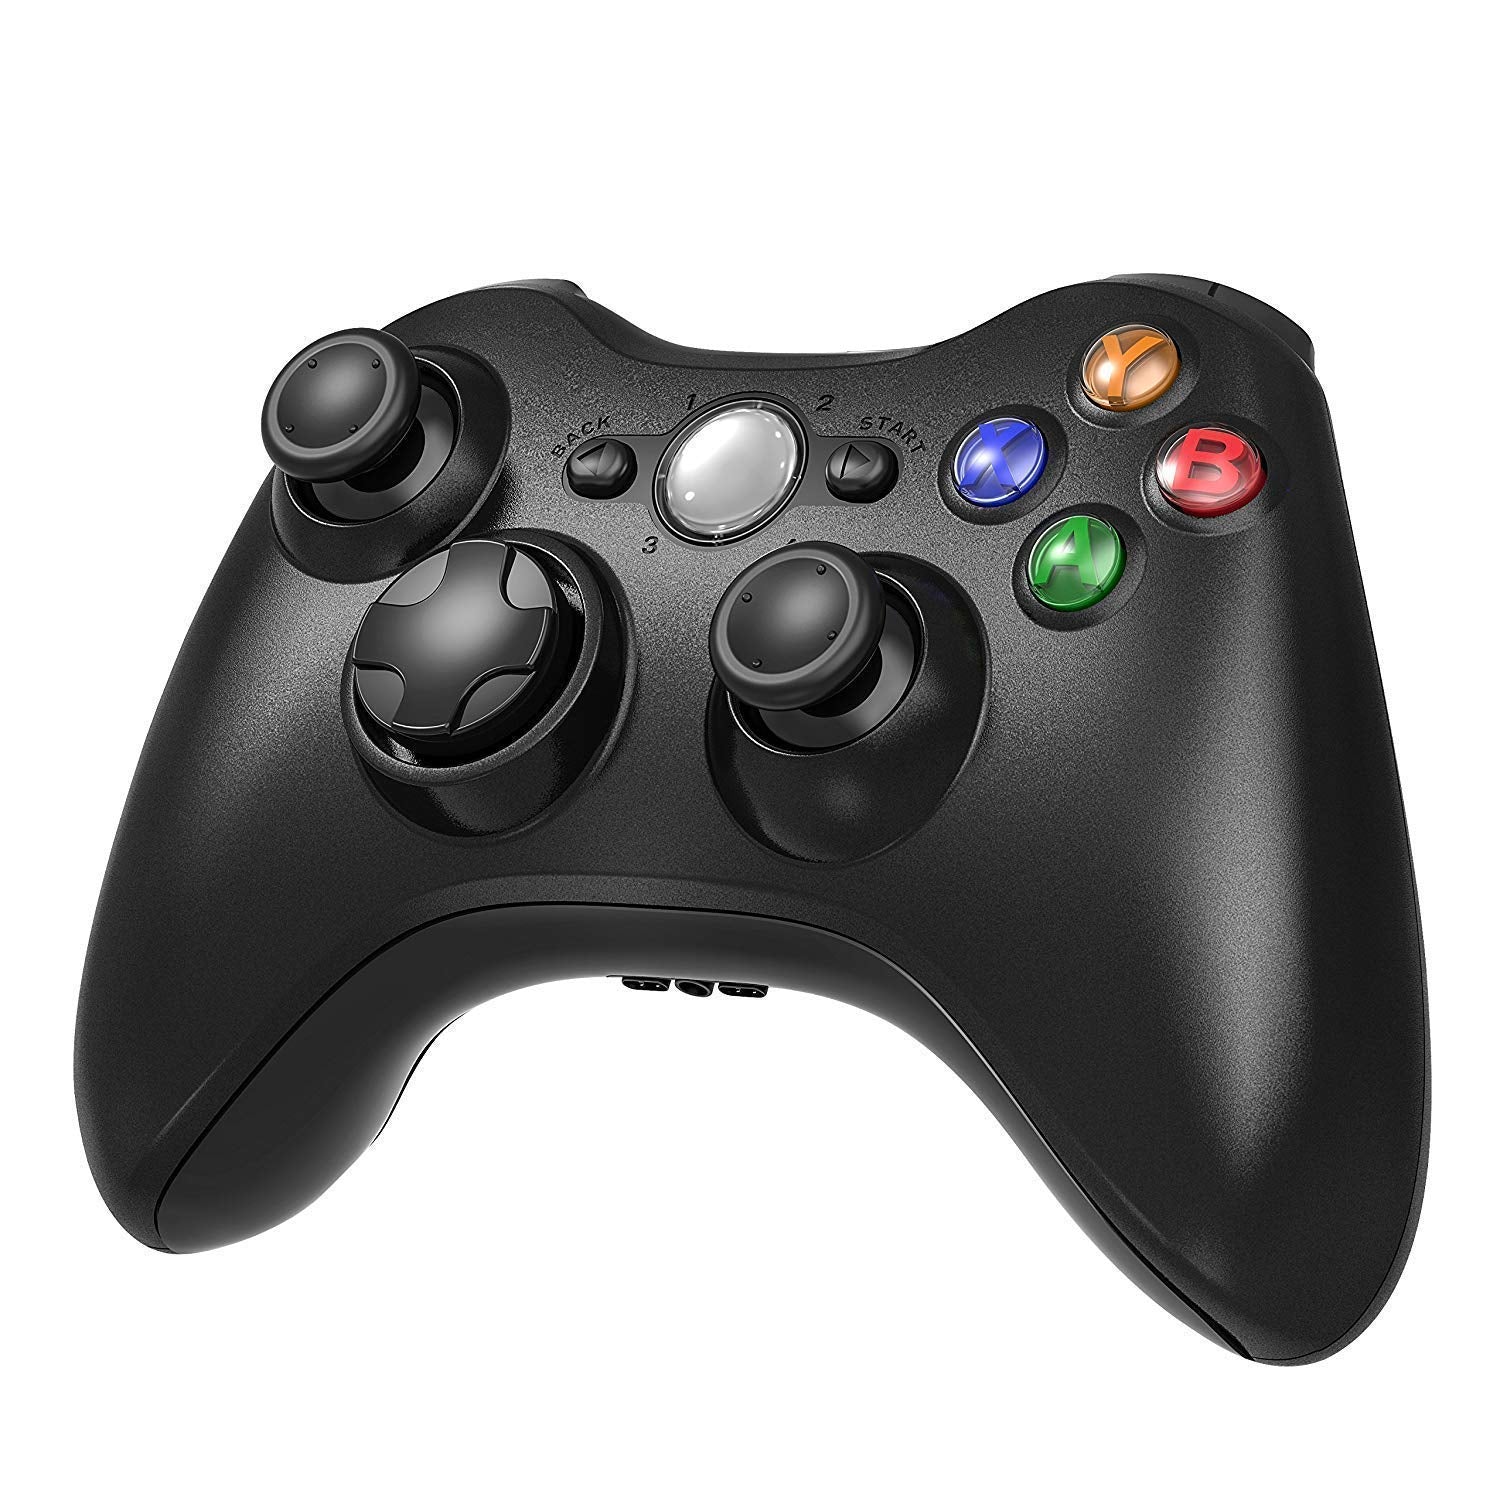 Wireless Controller for Microsoft Xbox Series X / S， Xbox One， Xbox 360  Slim &PC